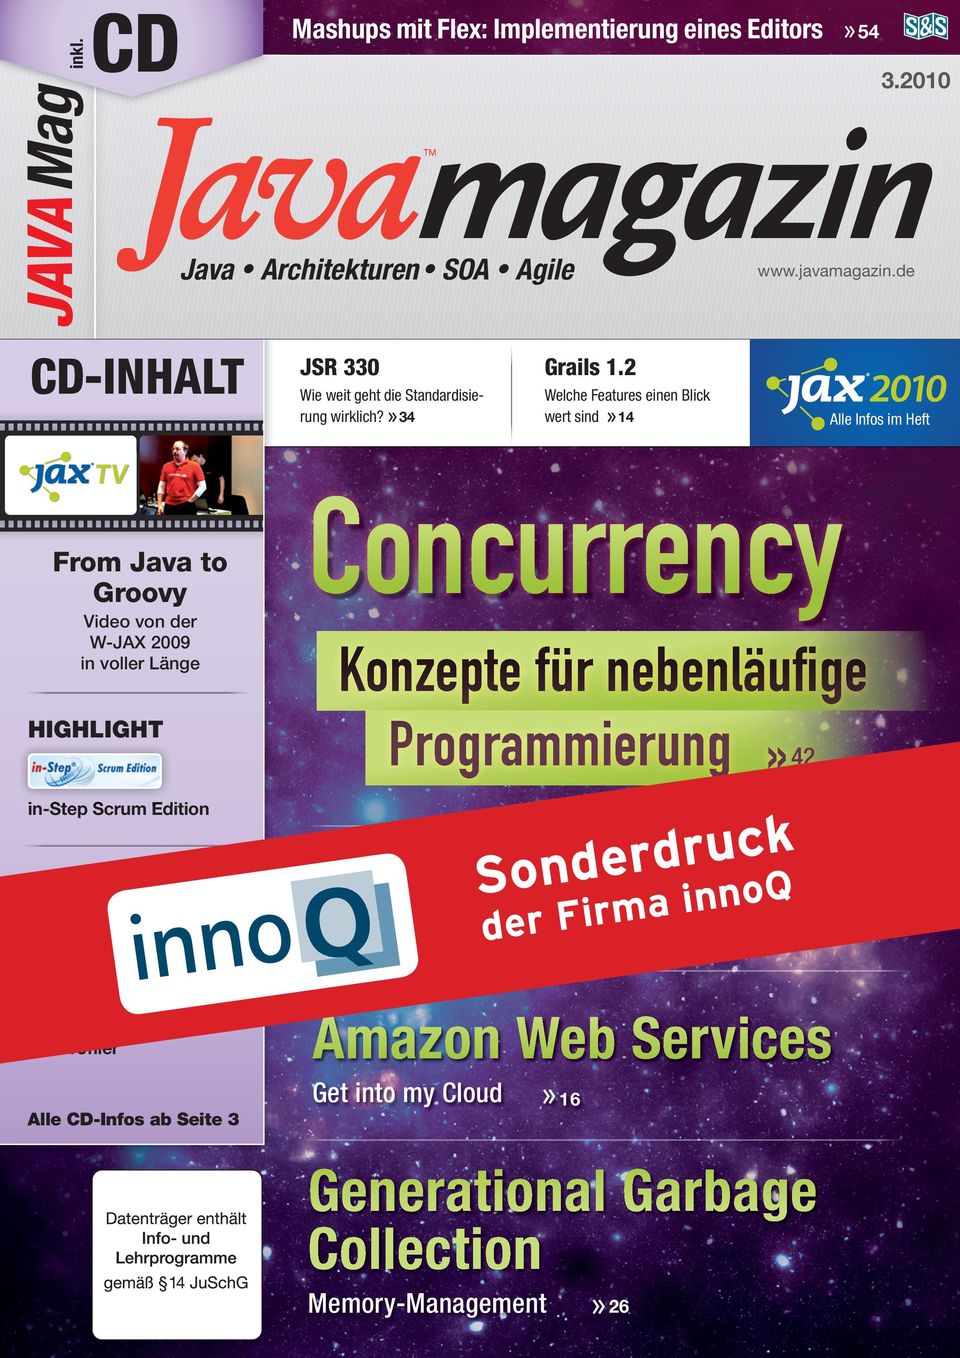 JSR 330 www.javamagazin.de Grails 1.2 Wie weit geht die Standardisierung wirklich?